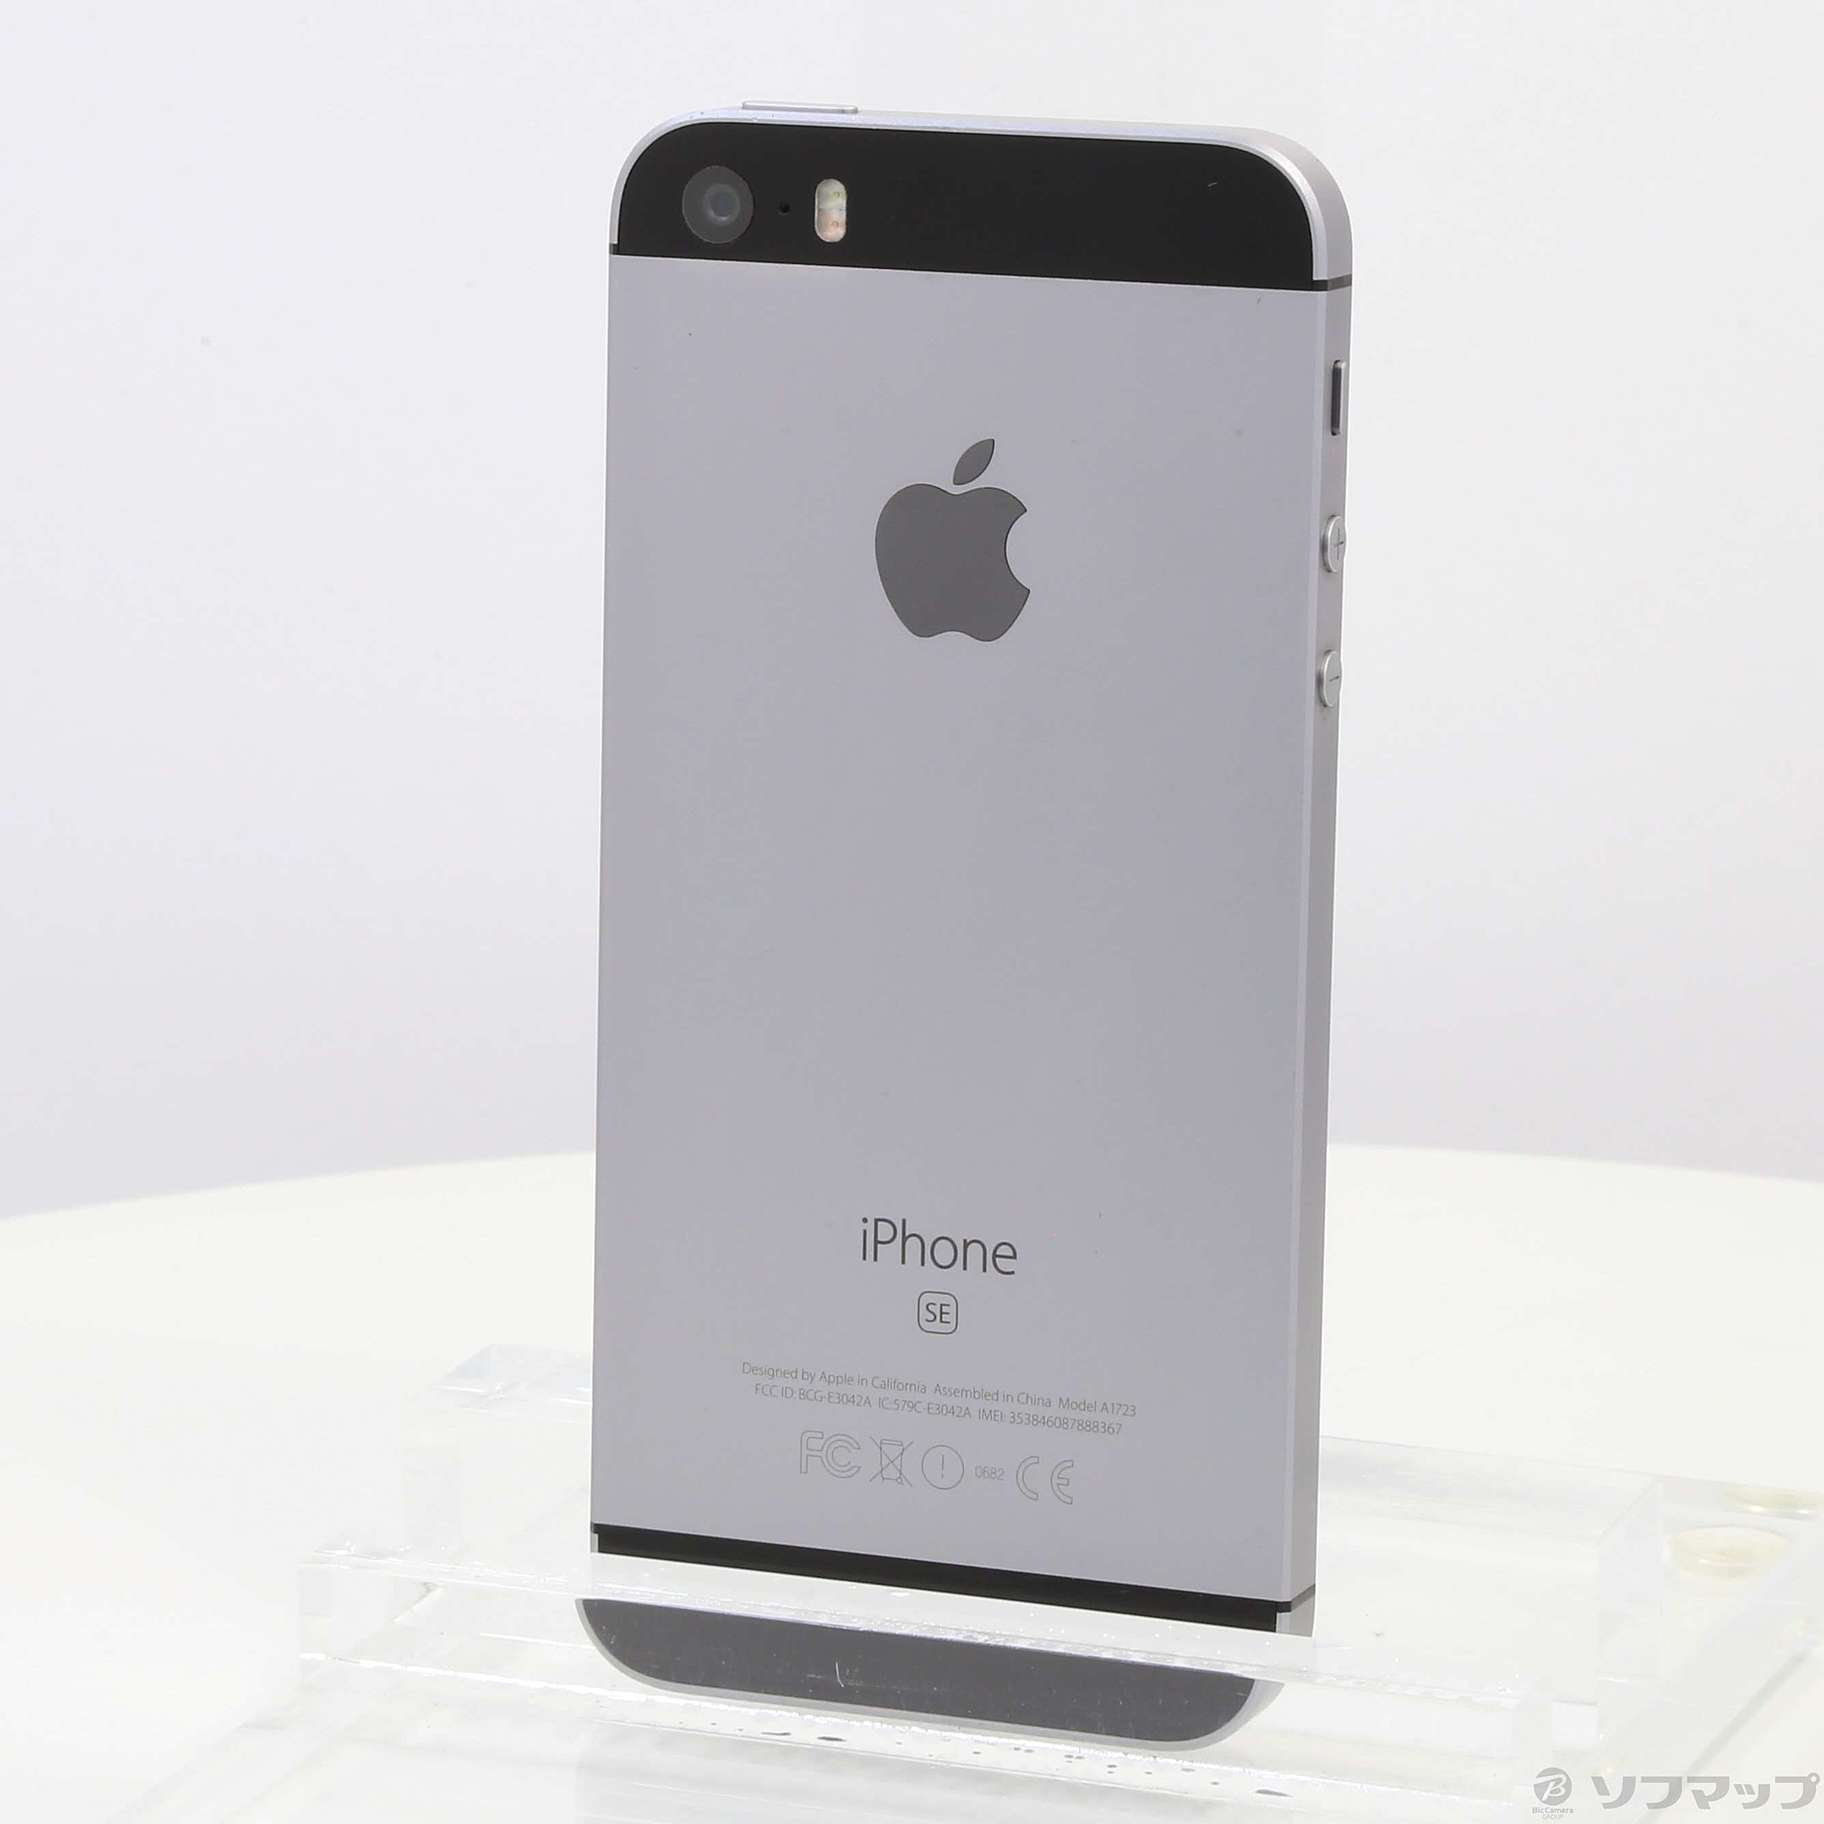 スマートフォン/携帯電話iPhoneSE 32GB SIMフリー スペースグレー